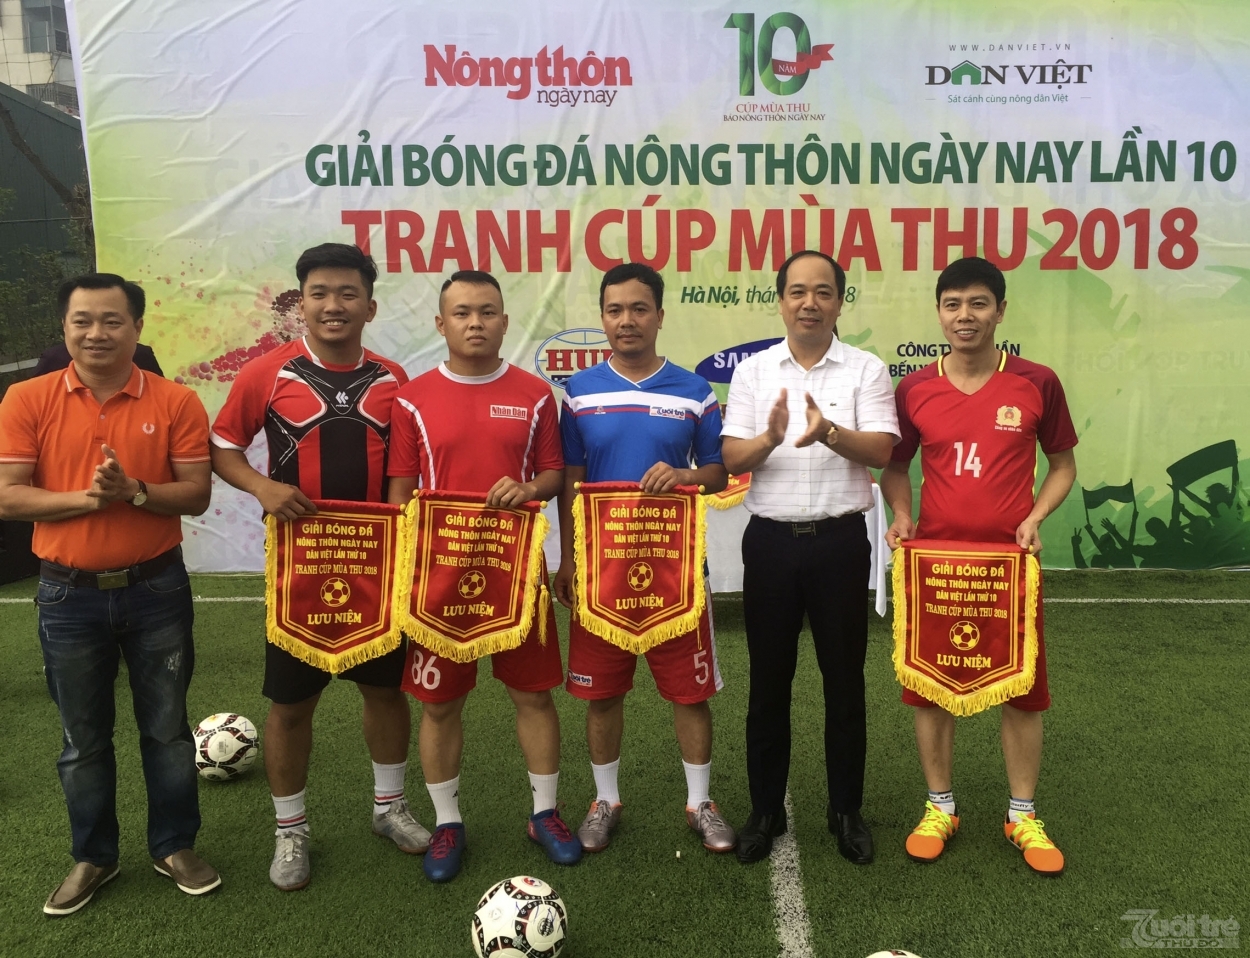 Nhà báo Nguyễn Mạnh Hưng, Tổng Biên tập Báo Tuổi trẻ Thủ đô trao cờ lưu niệm cho đại diện các đội bóng.